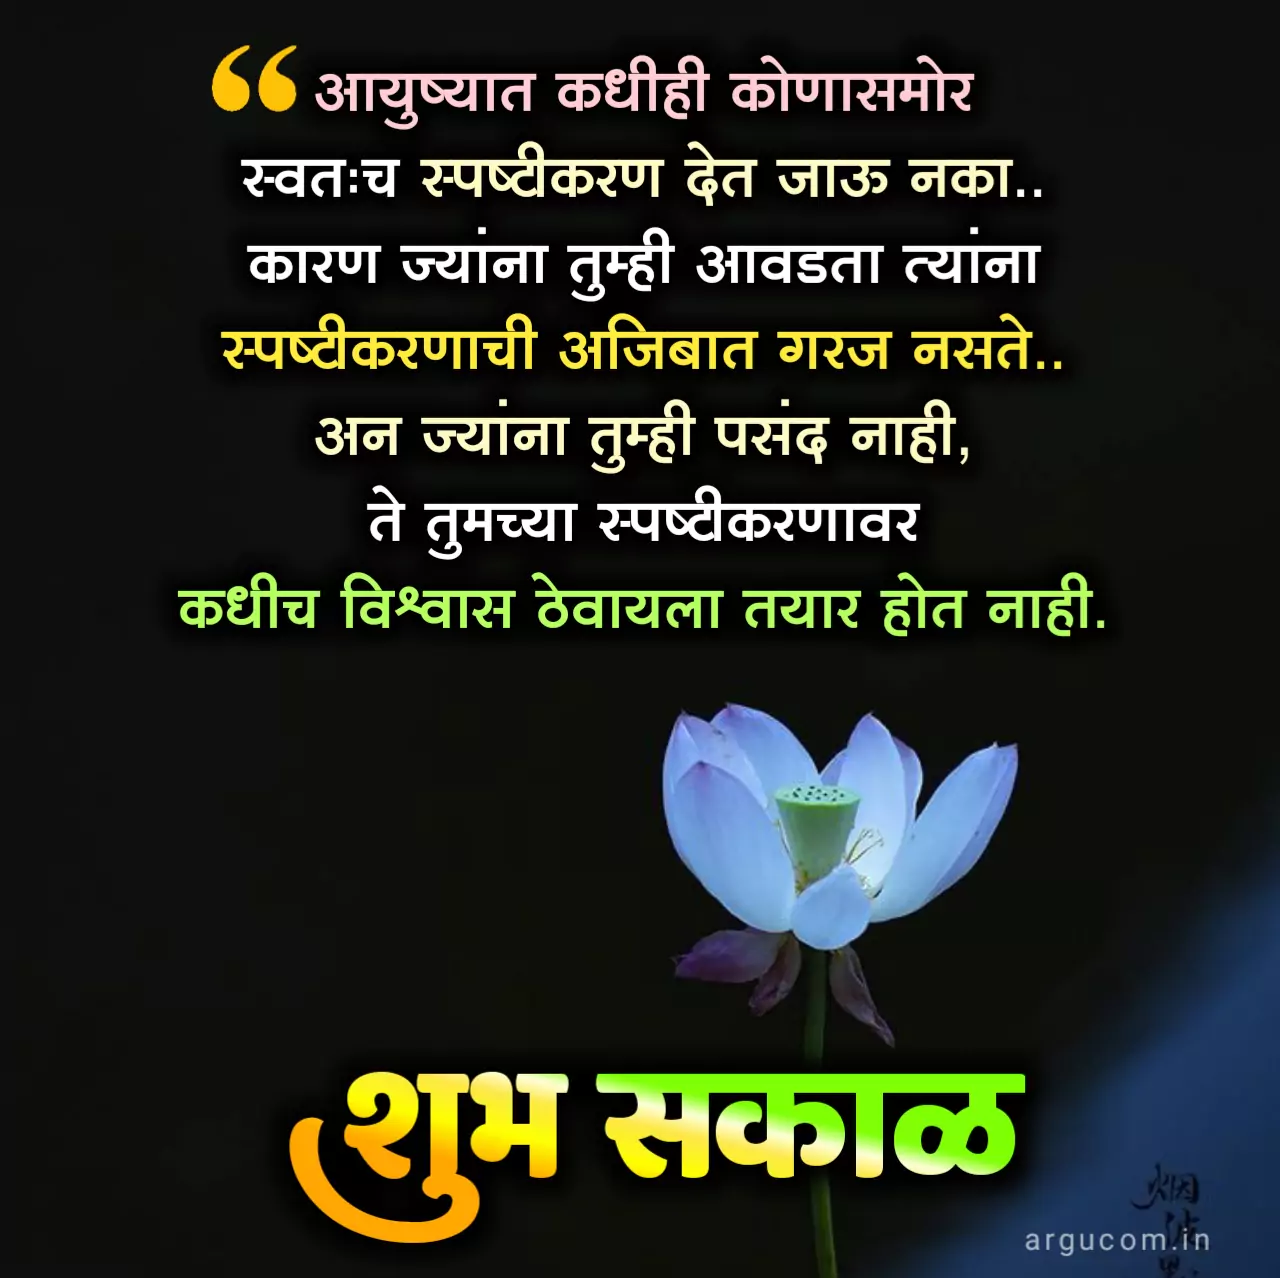 Good morning wishes in marathi